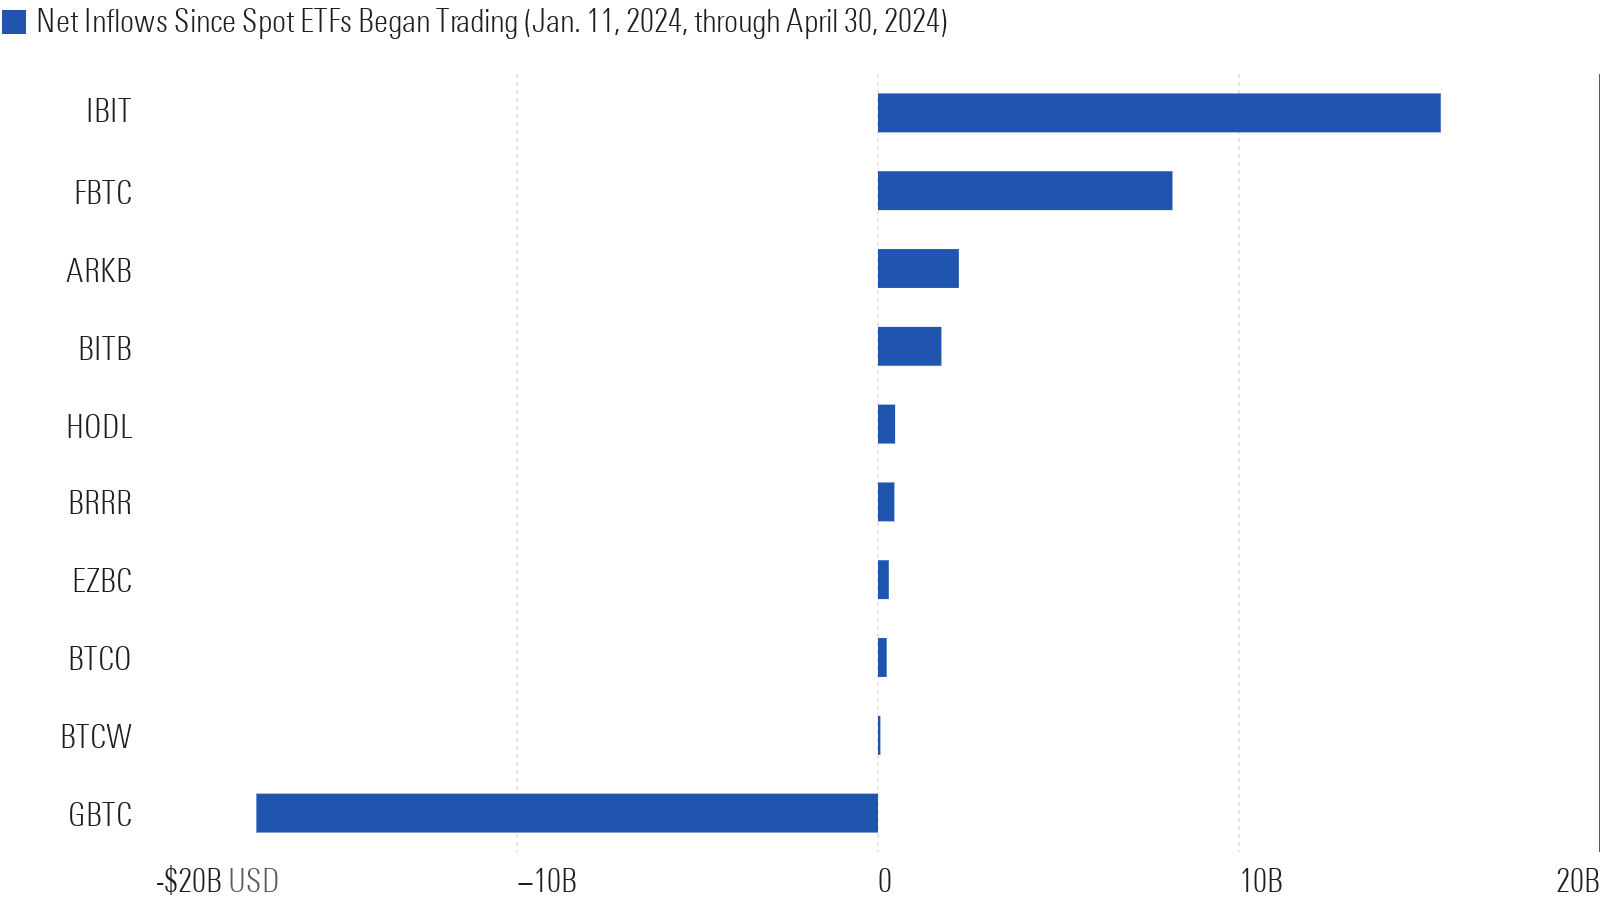 Bar chart showing net inflows for each spot bitcoin ETF through April 30, 2024. GBTC has large net outflows and IBIT and FBTC have large net inflows.